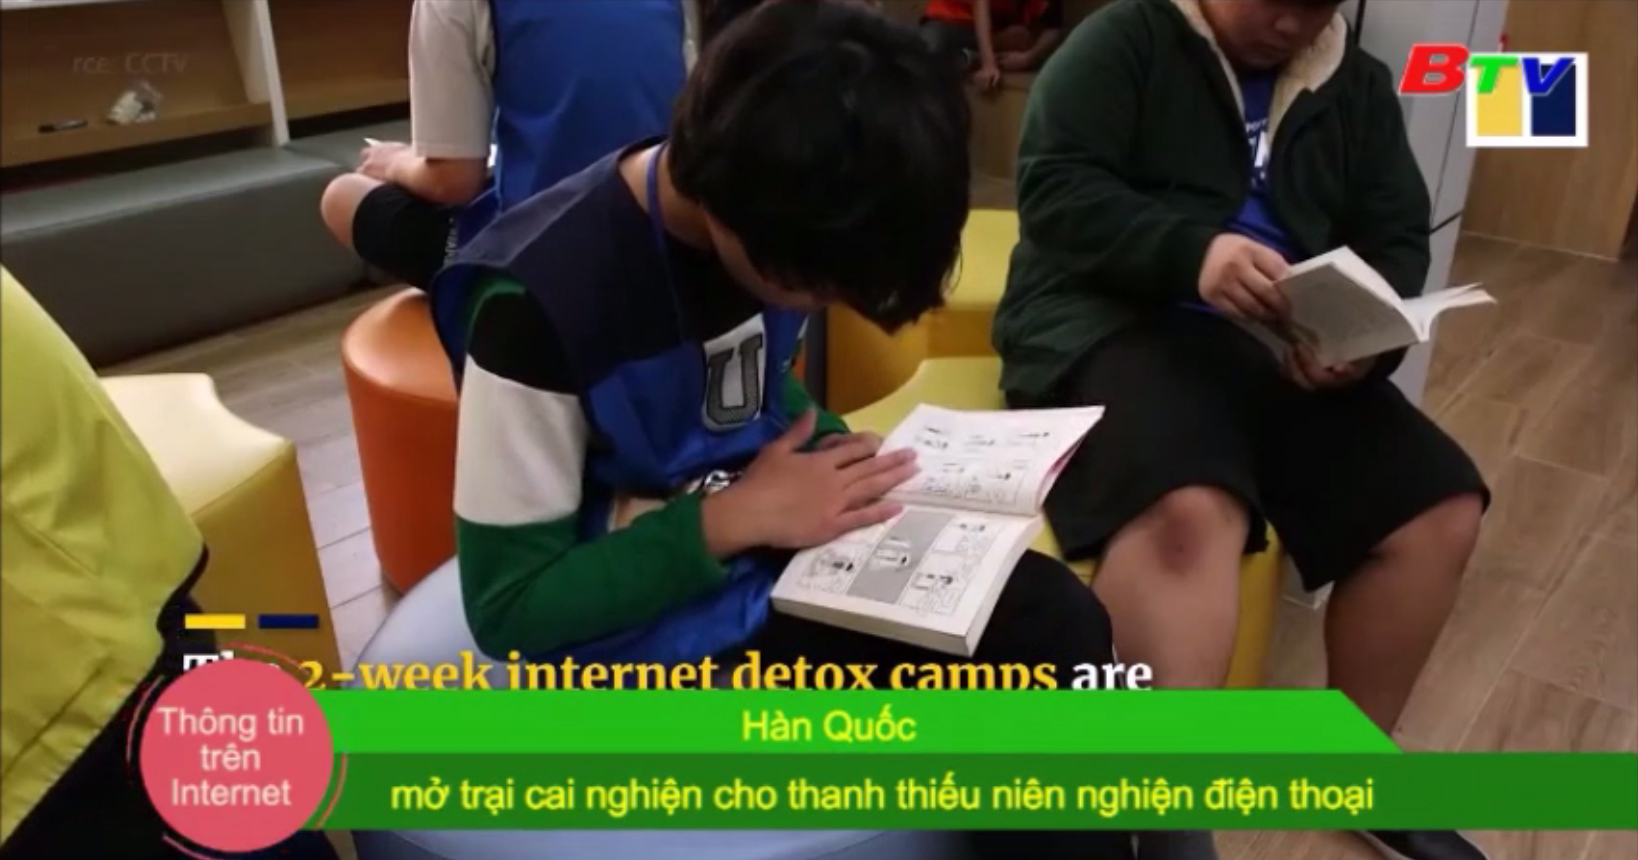 Hàn Quốc mở trại cai nghiện cho thanh thiếu niên nghiện điện thoại